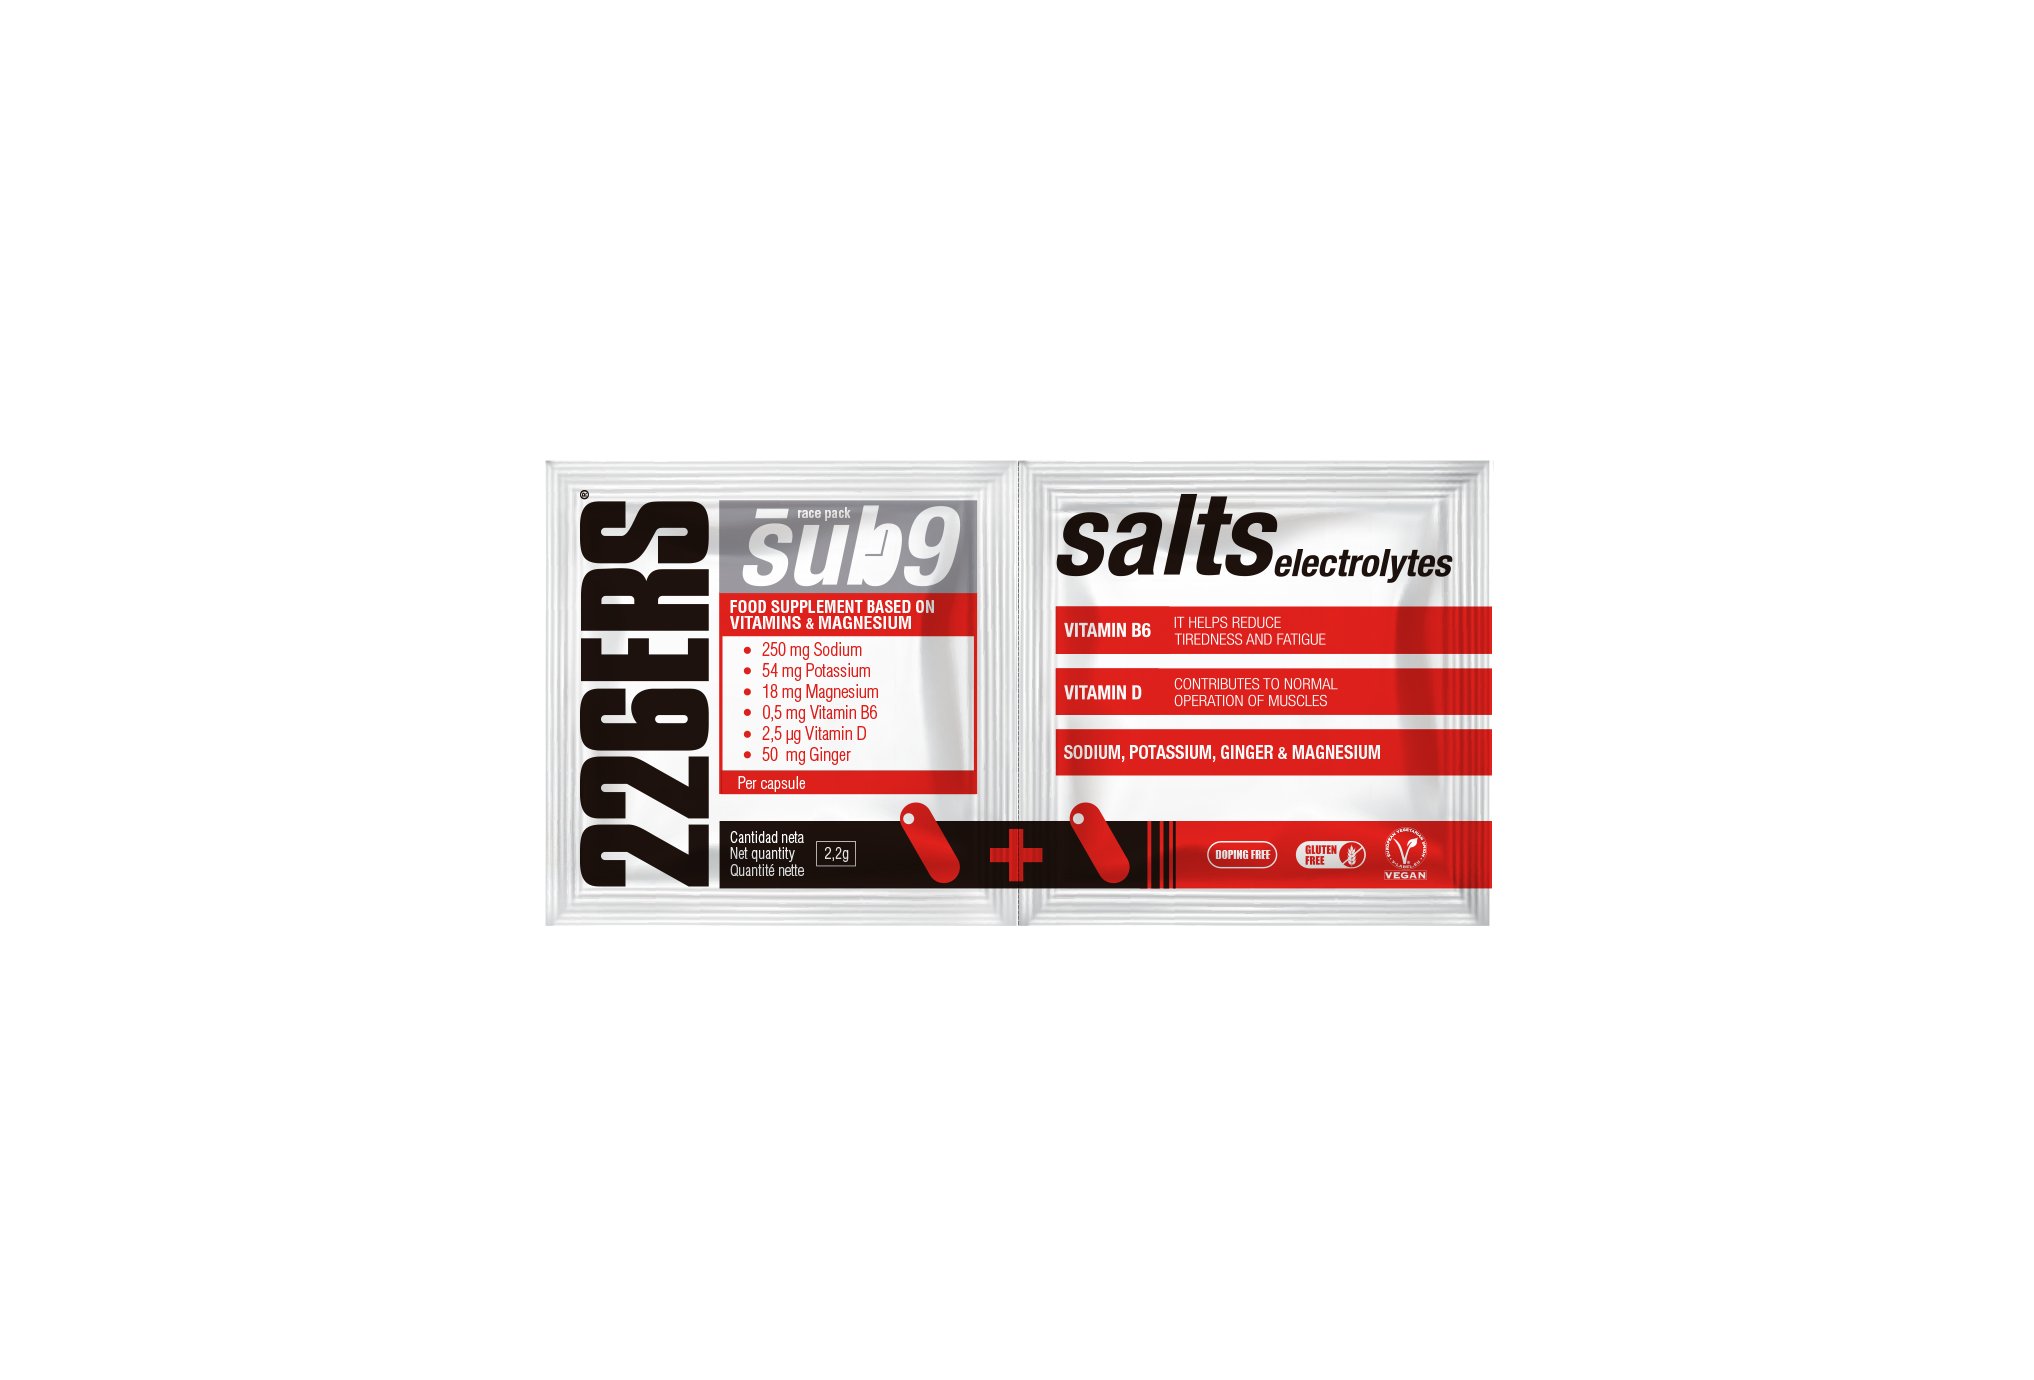 226ers Salts Électrolytes Sub9 - monodose Diététique Compléments